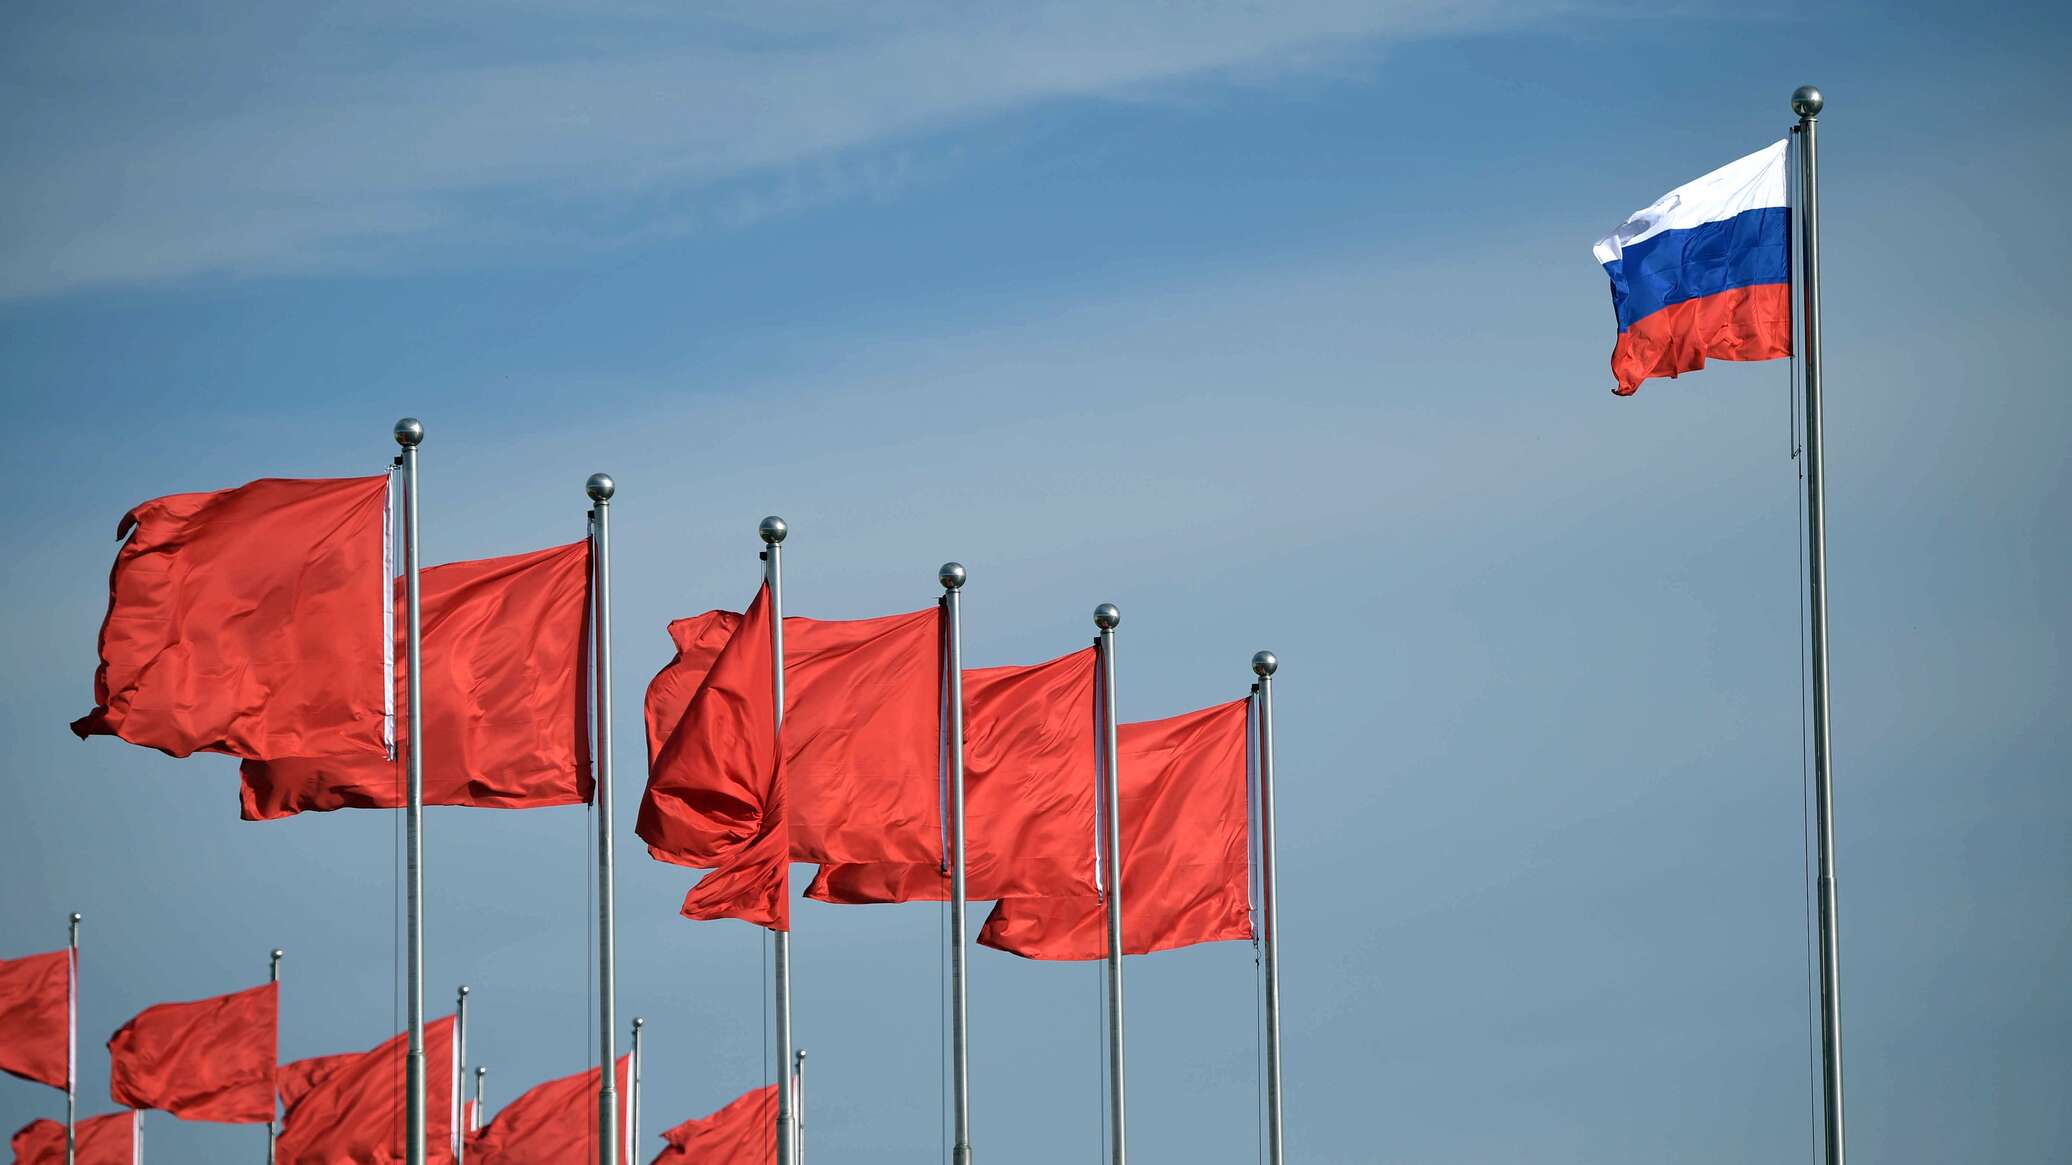 السفير الصيني لدى موسكو: بكين تعتزم توسيع التعاون مع روسيا في مجال الطاقة